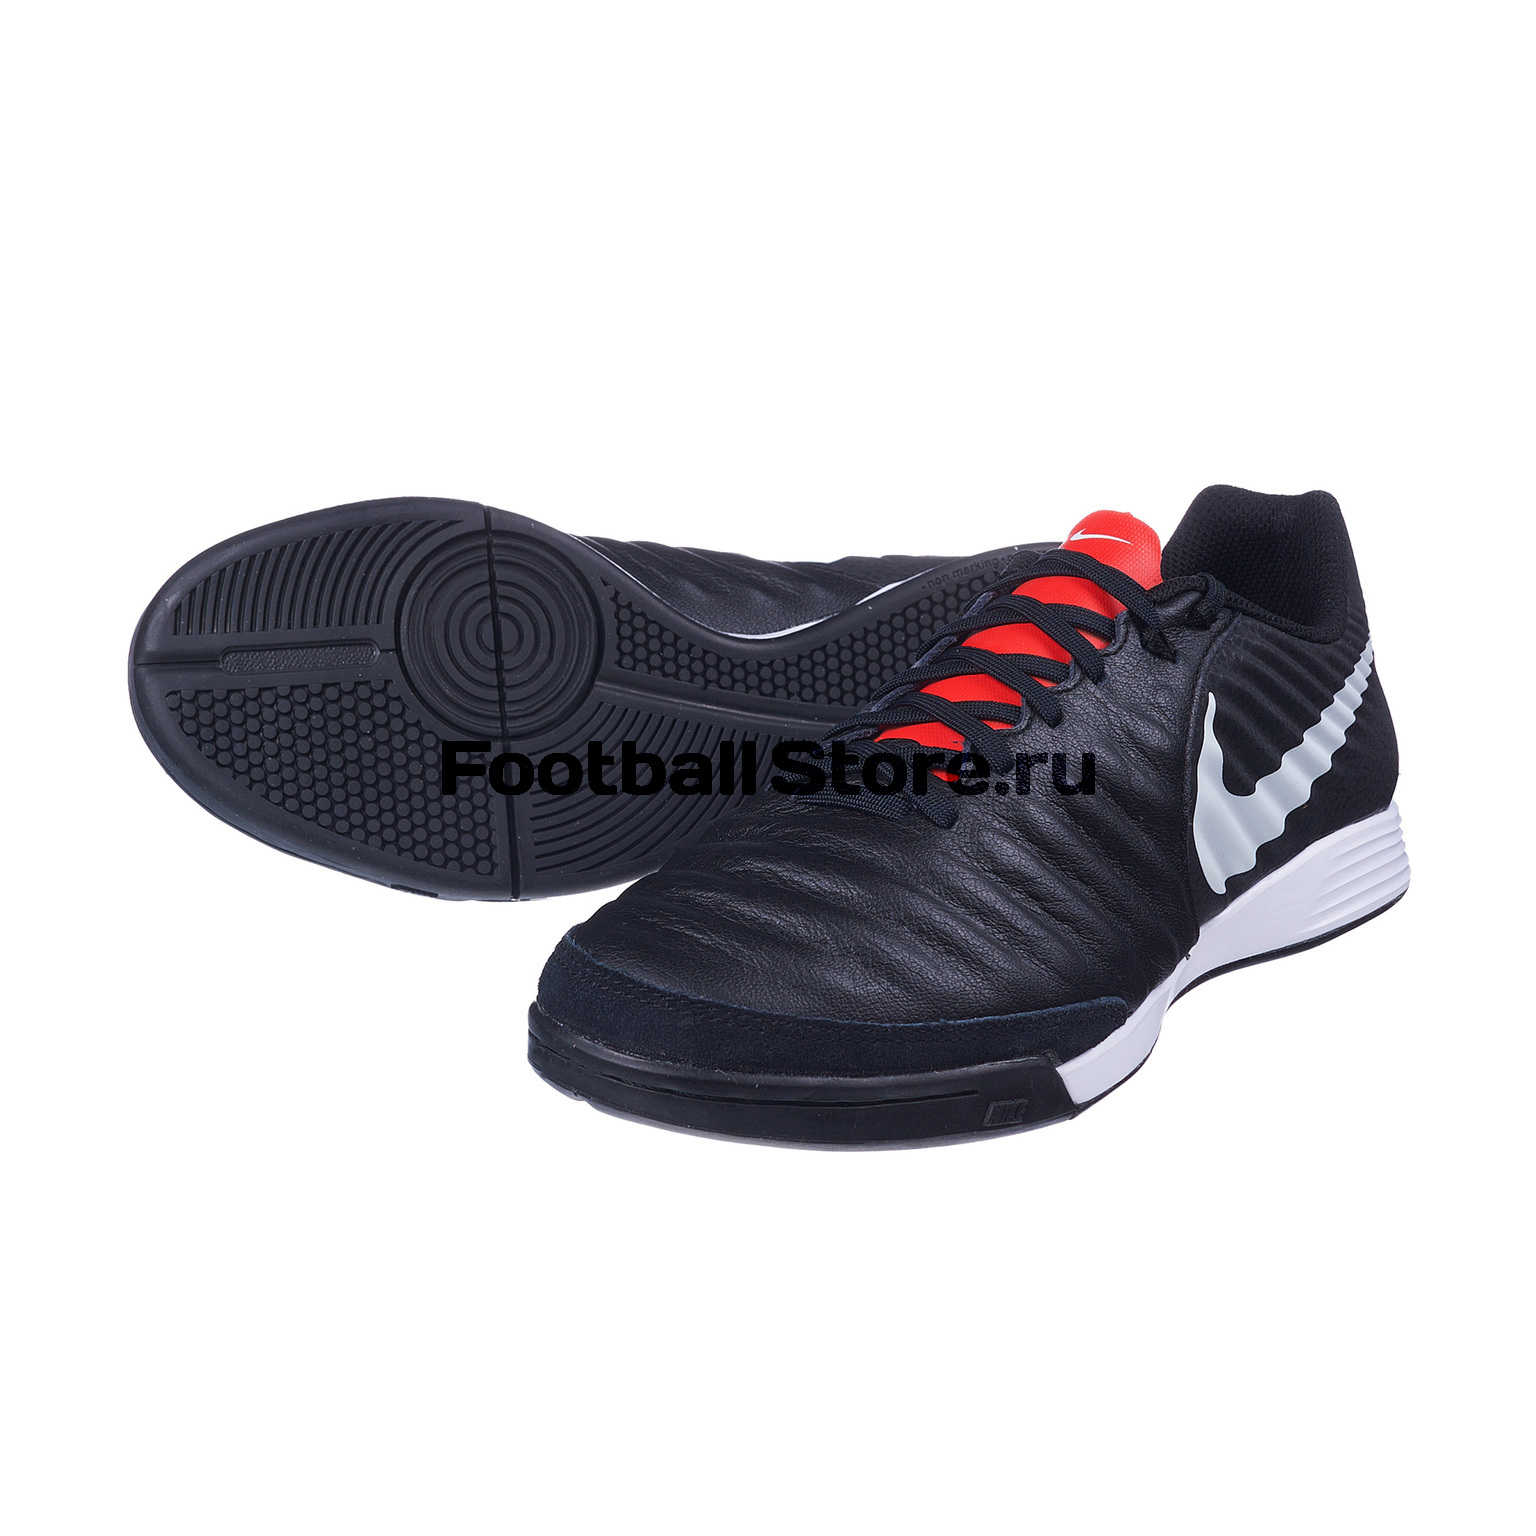 Обувь для зала Nike LegendX 7 Academy IC AH7244-006